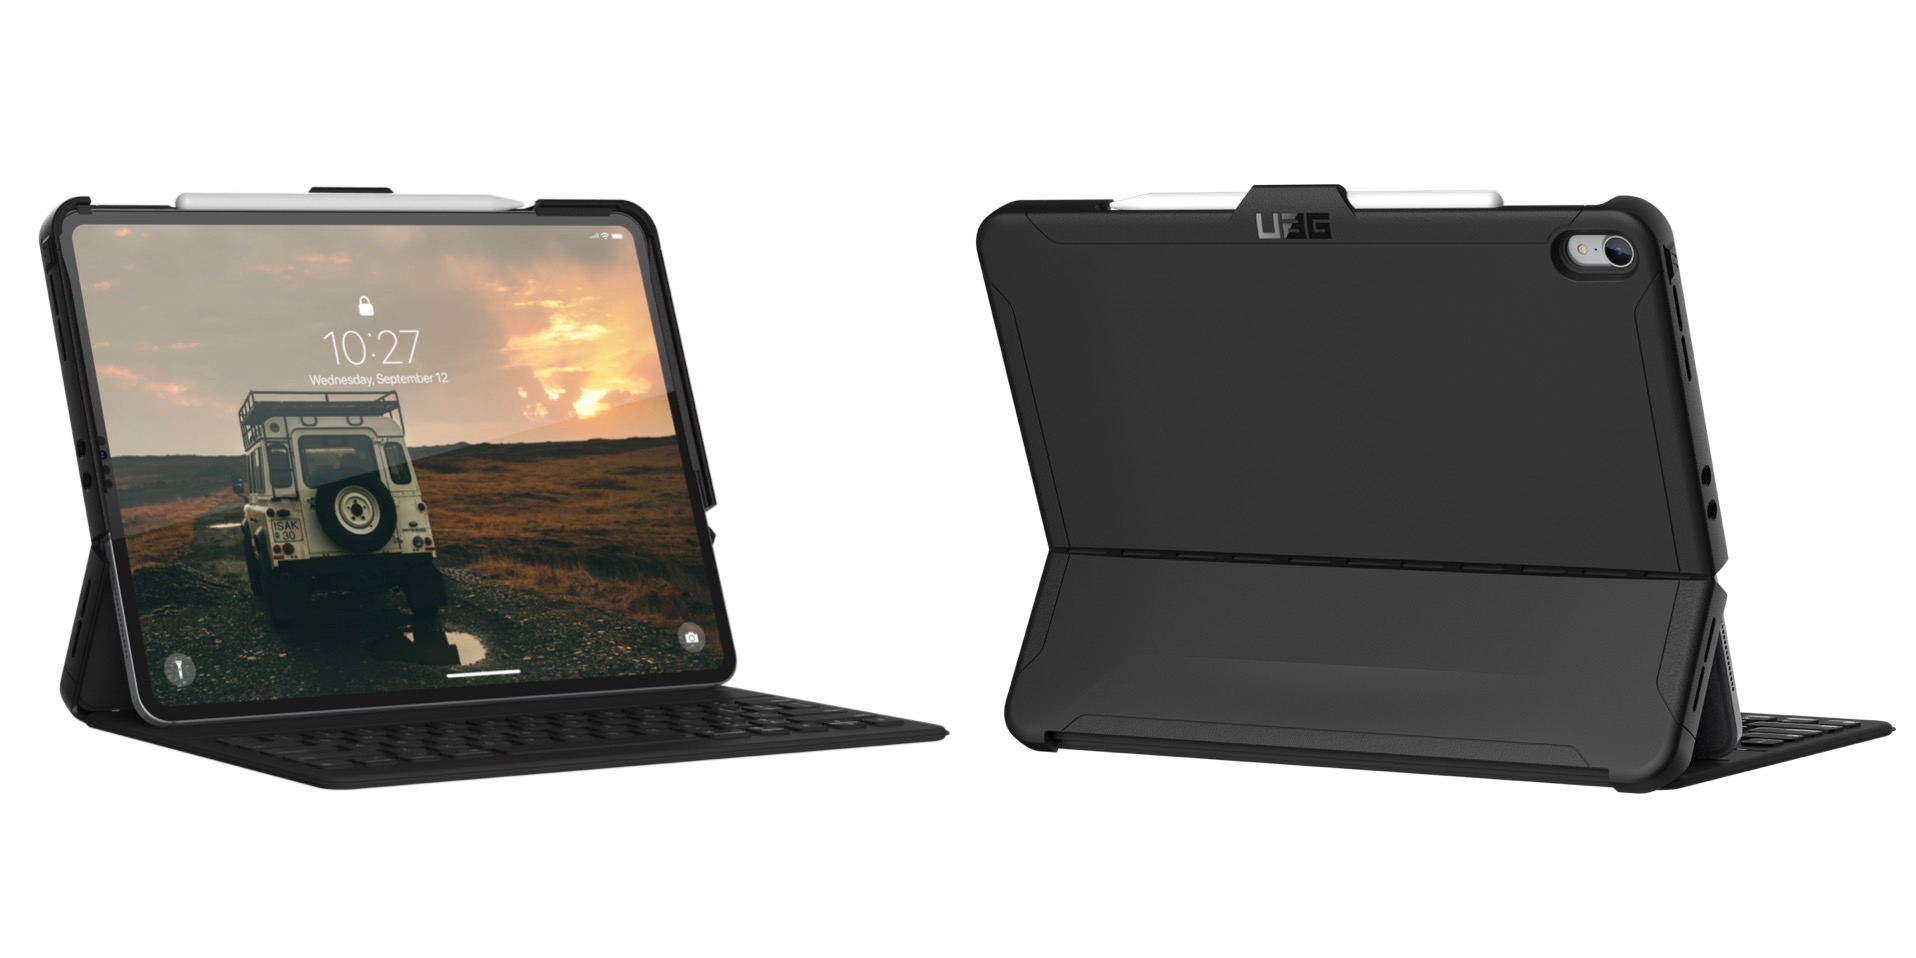 UAG giới thiệu mẫu case chịu lực cho bàn phím iPad Pro 2018, giá 50 USD